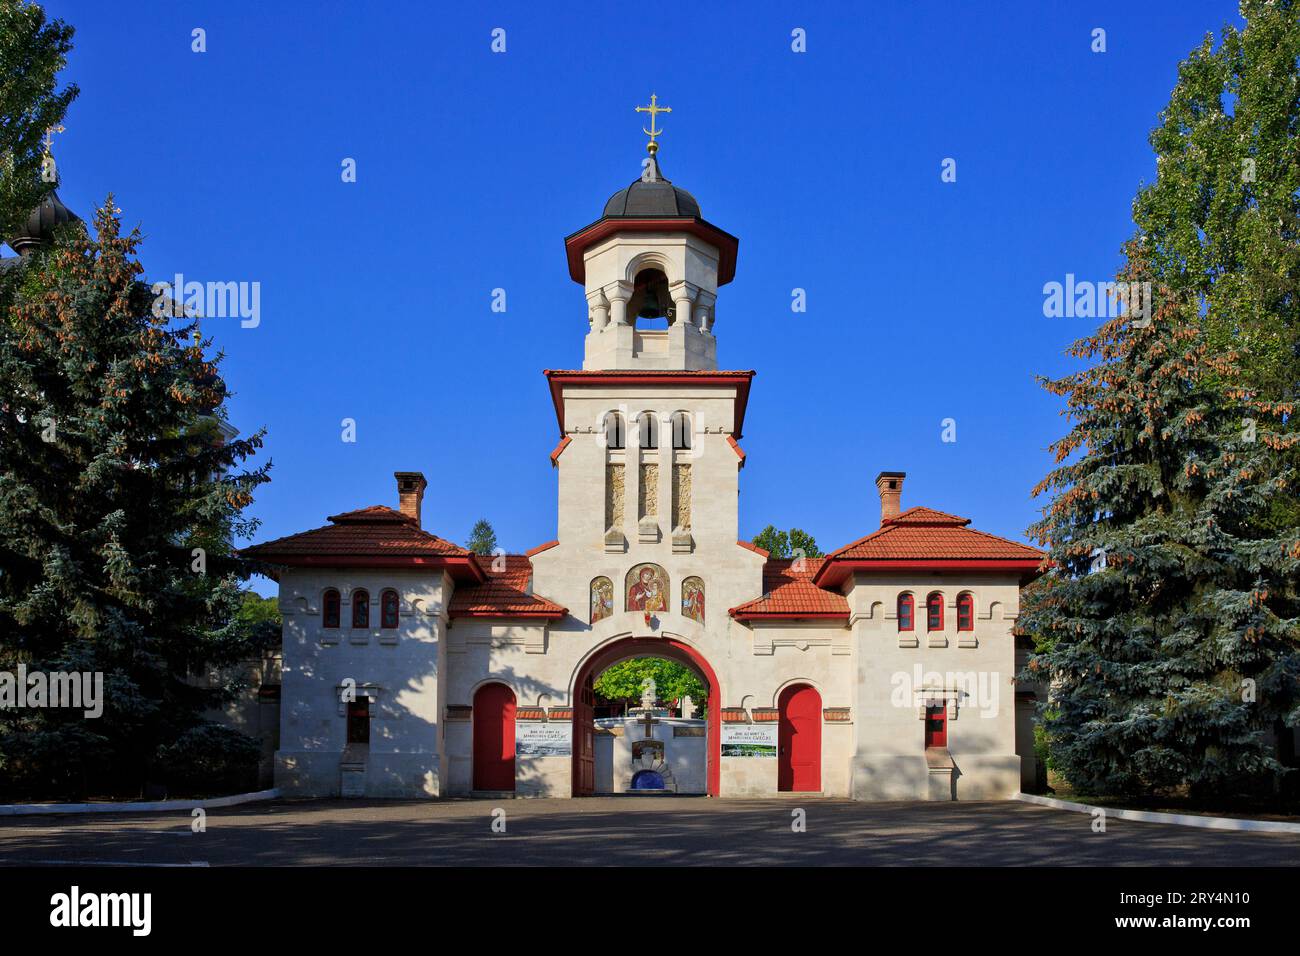 Der Haupteingang (Torhaus) zum Kloster Curchi (gegründet 1773-1775) in Curchi (Vatici), Moldau Stockfoto